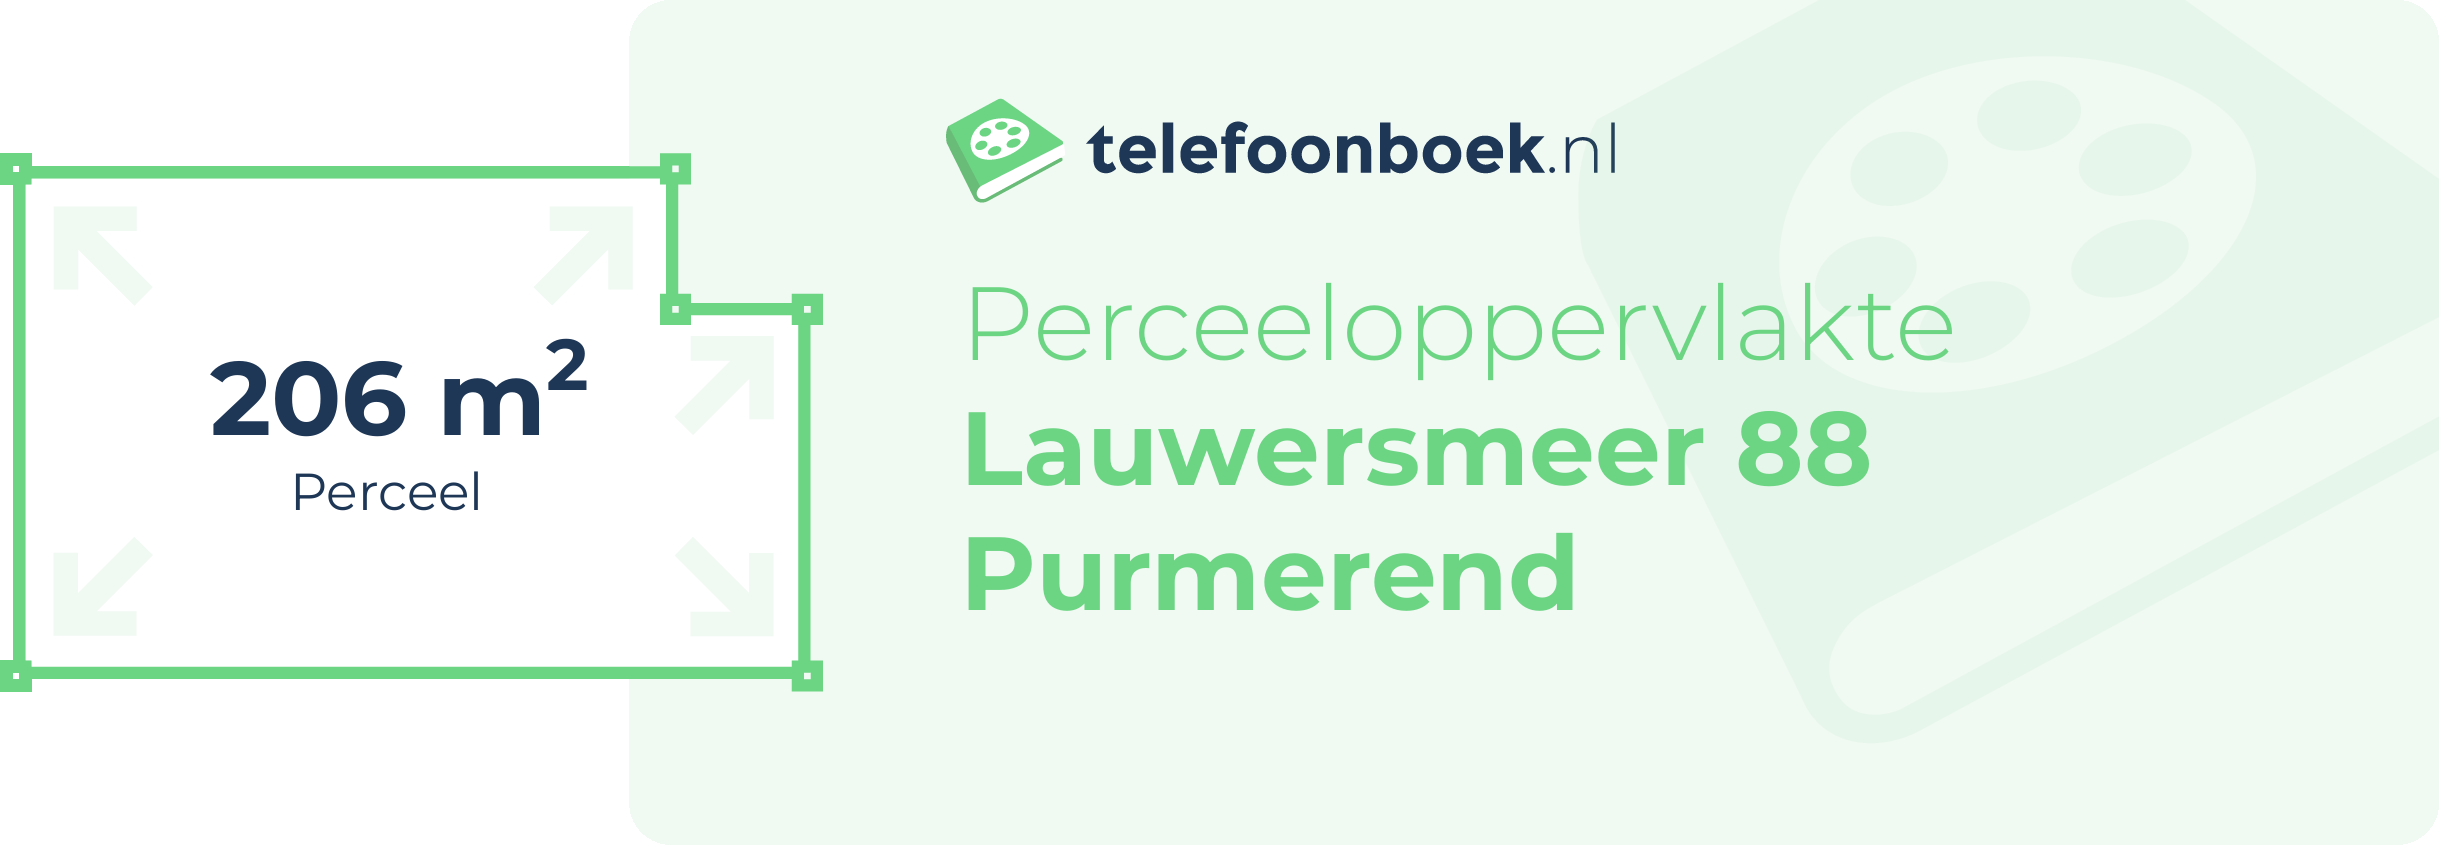 Perceeloppervlakte Lauwersmeer 88 Purmerend